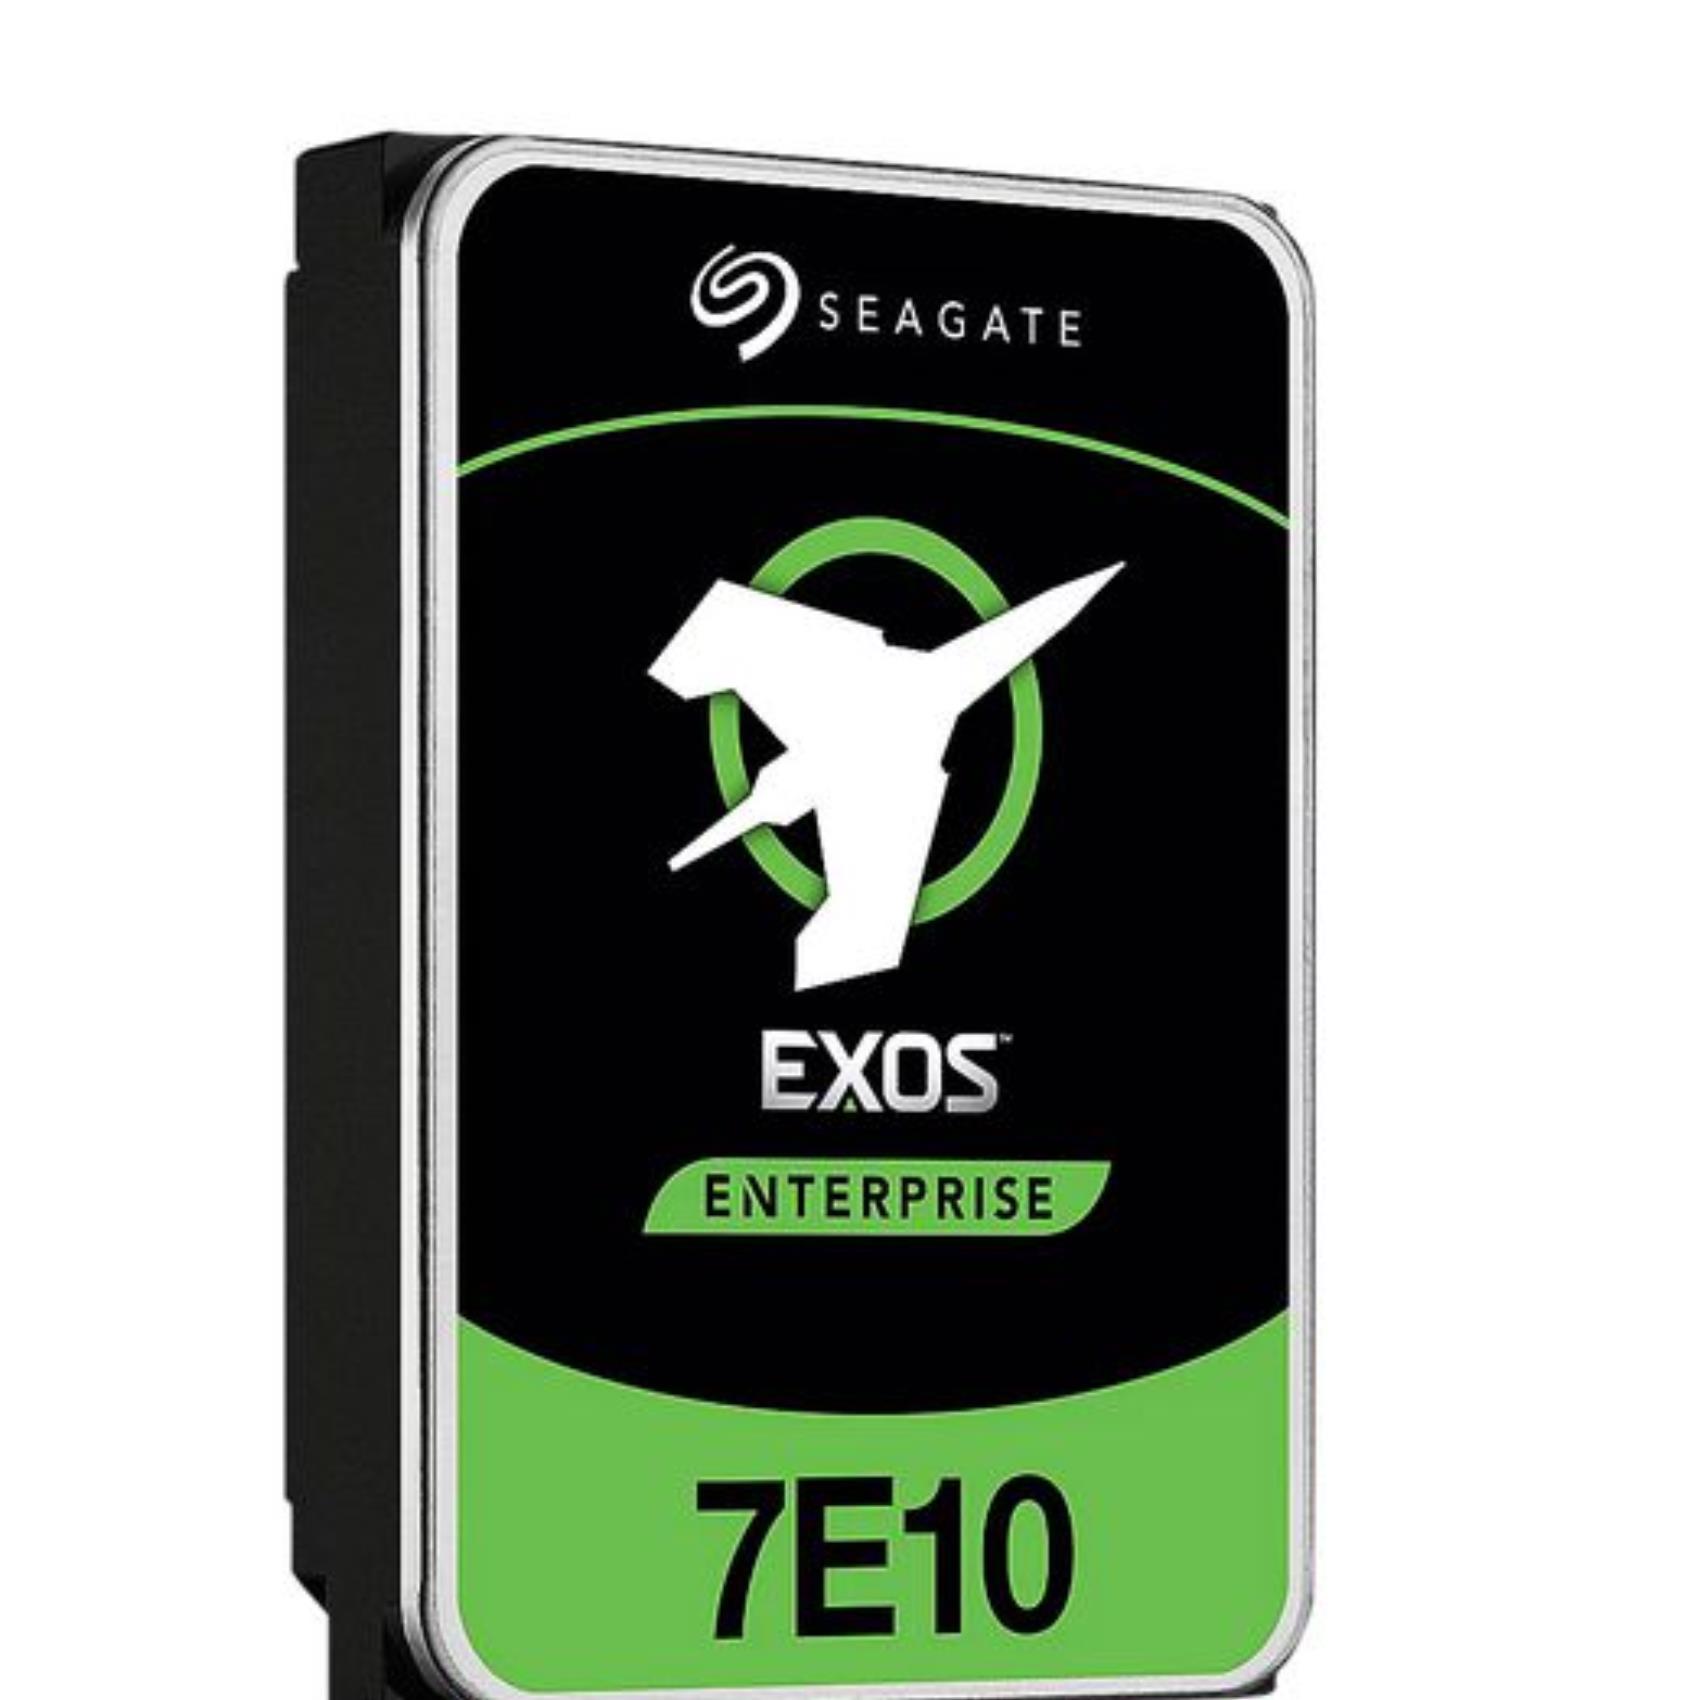 8TB EXOS 7E10 ENTERP. SATA 3.5 7200